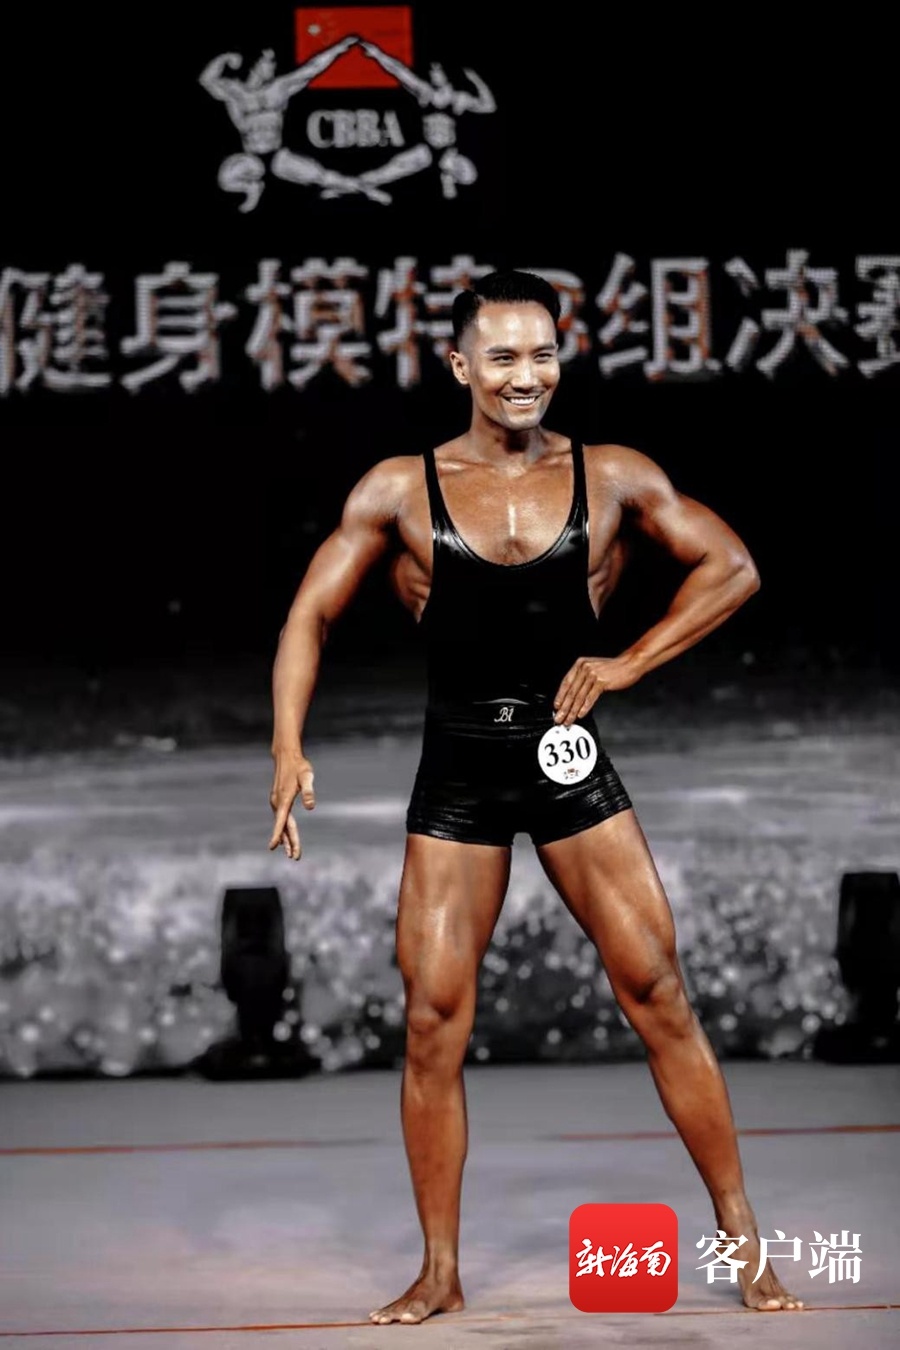 全国健美健身冠军总决赛将在文昌开赛 世界冠军刘孟易将领衔众多运动员参赛